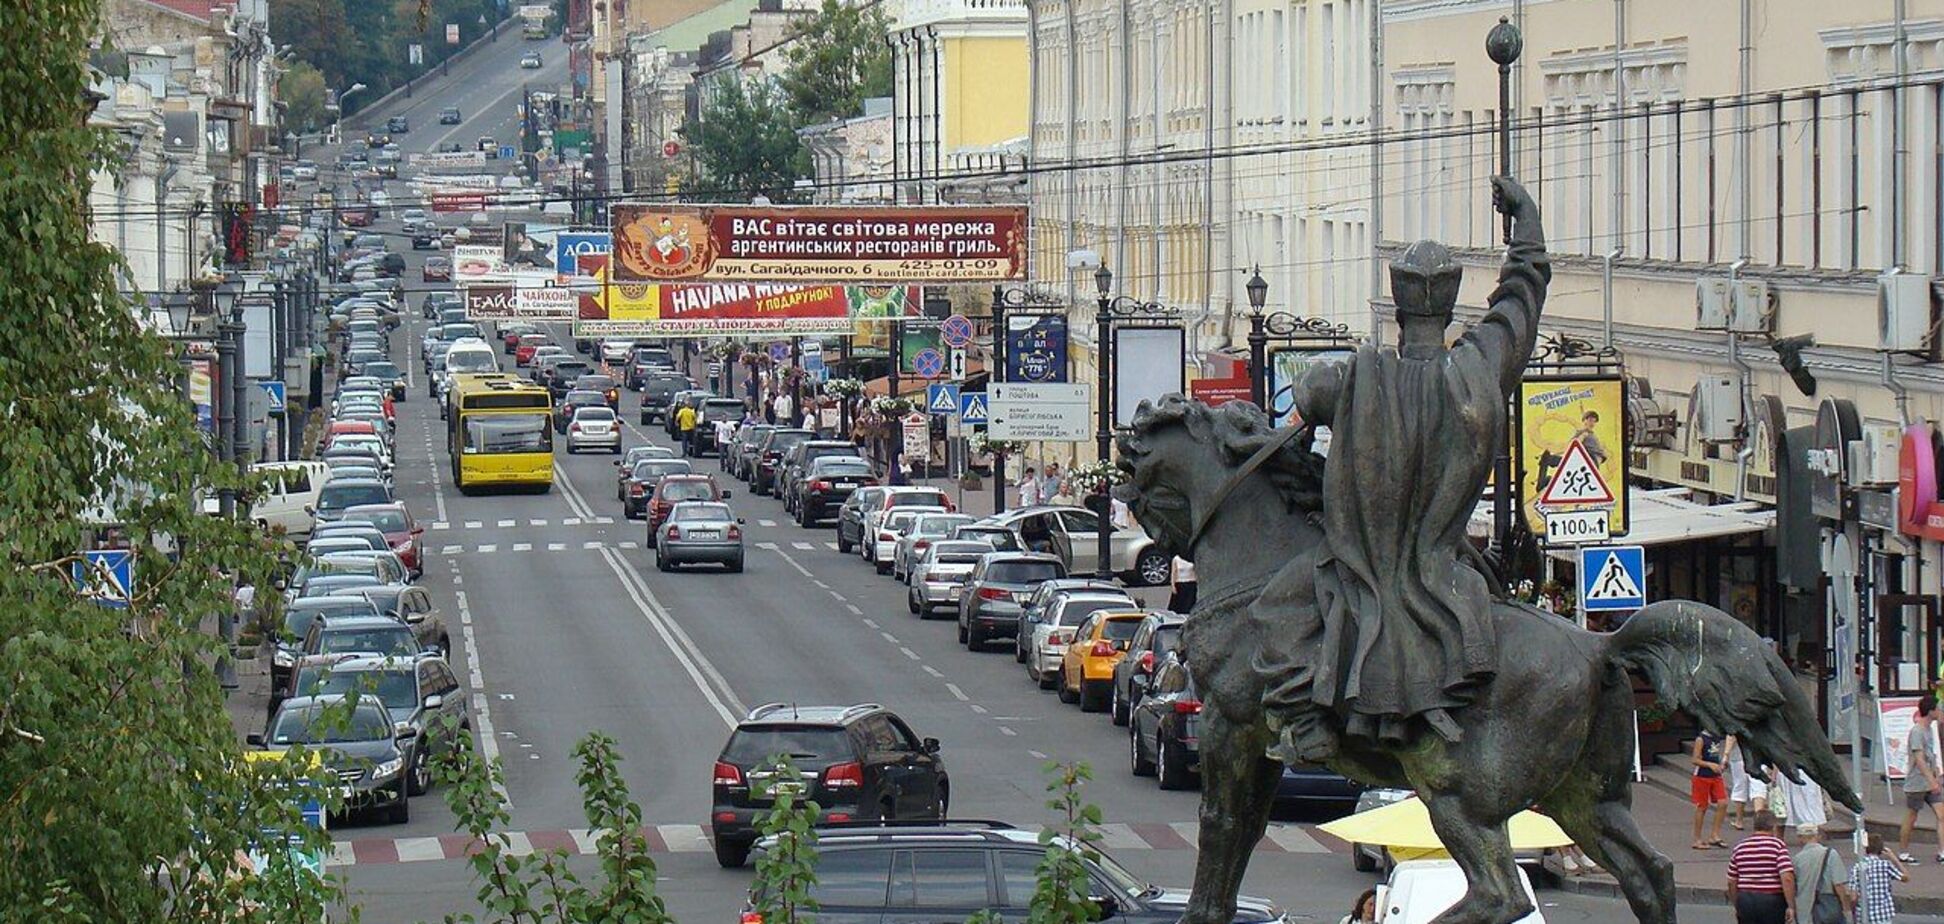 Вид на улицу в наши дни со стороны Контрактовой площади